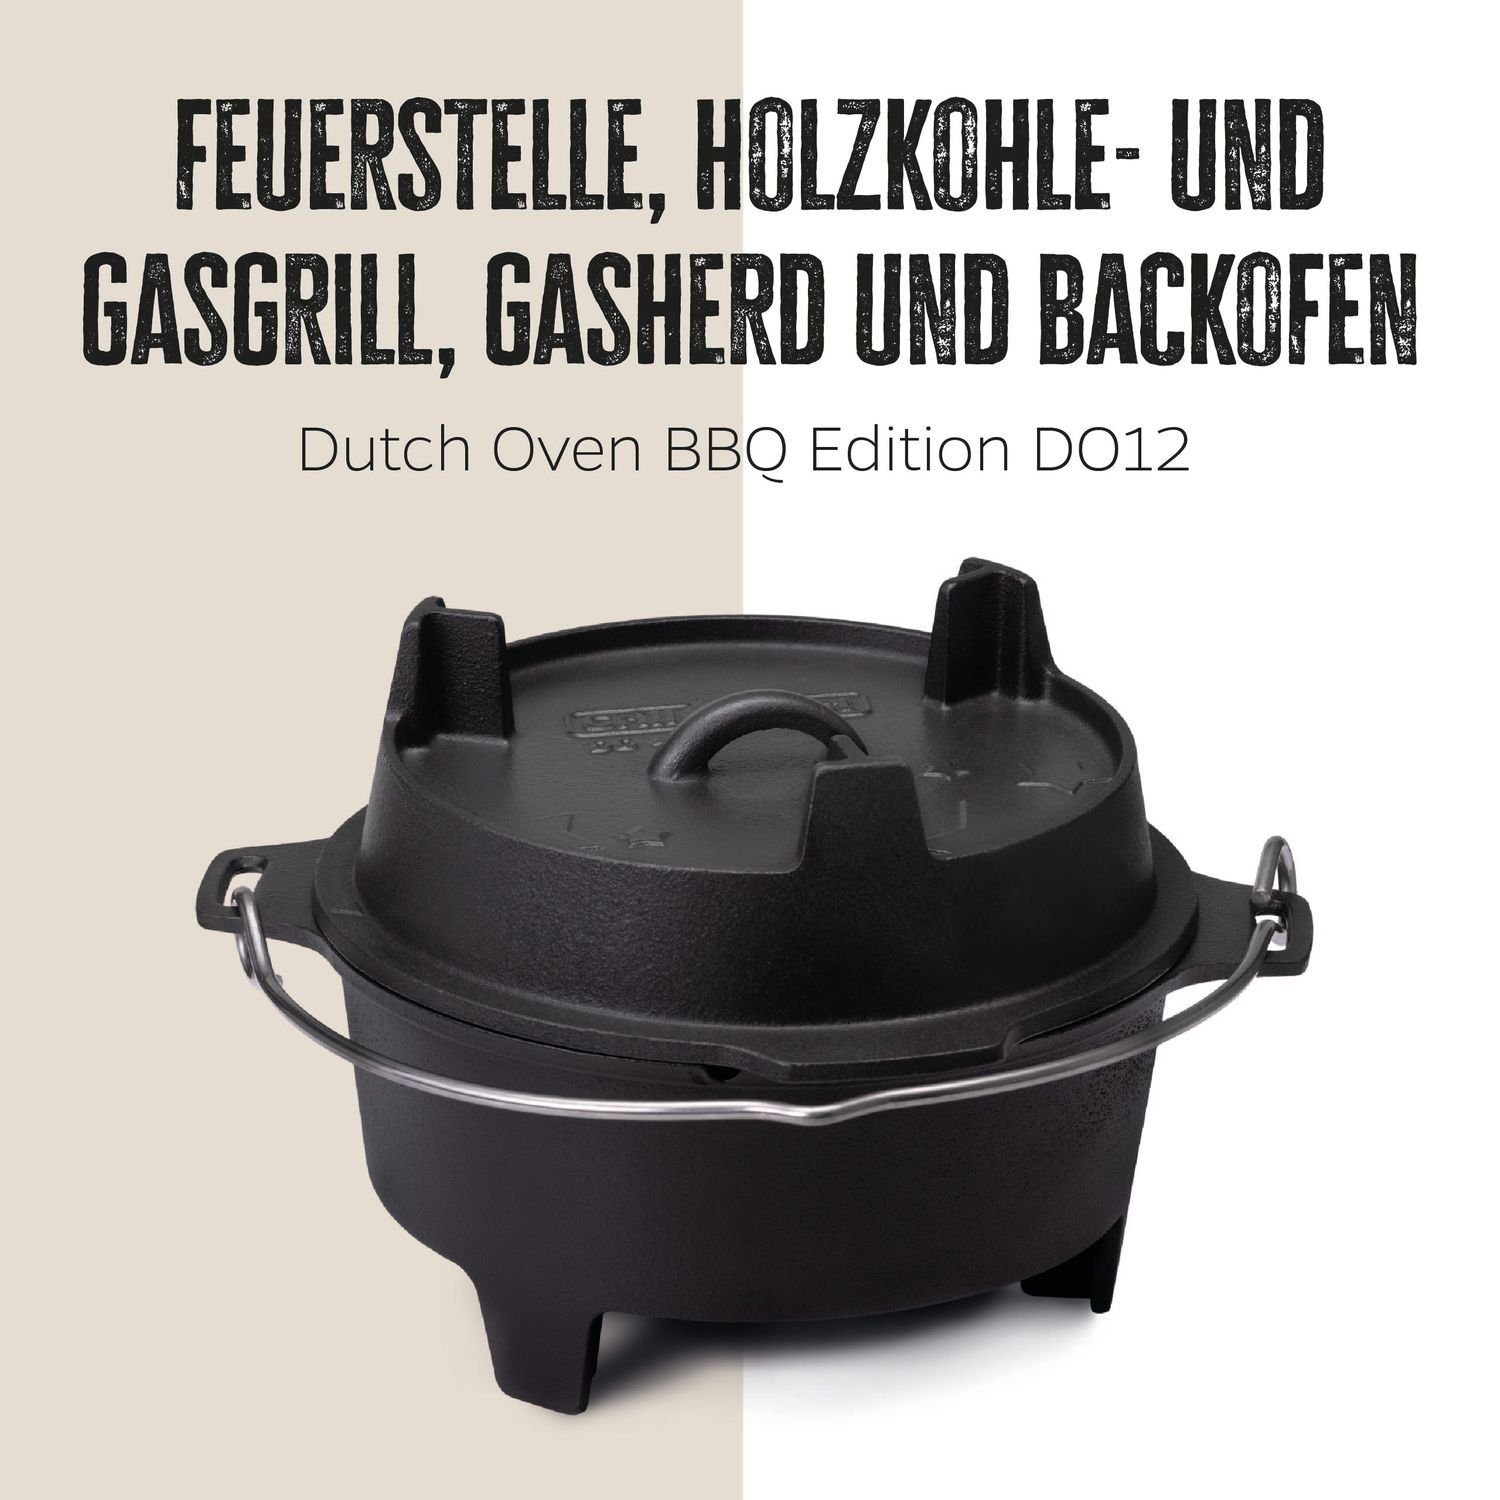 Grillfürst Bratentopf Grillfürst Dutch Oven BBQ Edition DO12